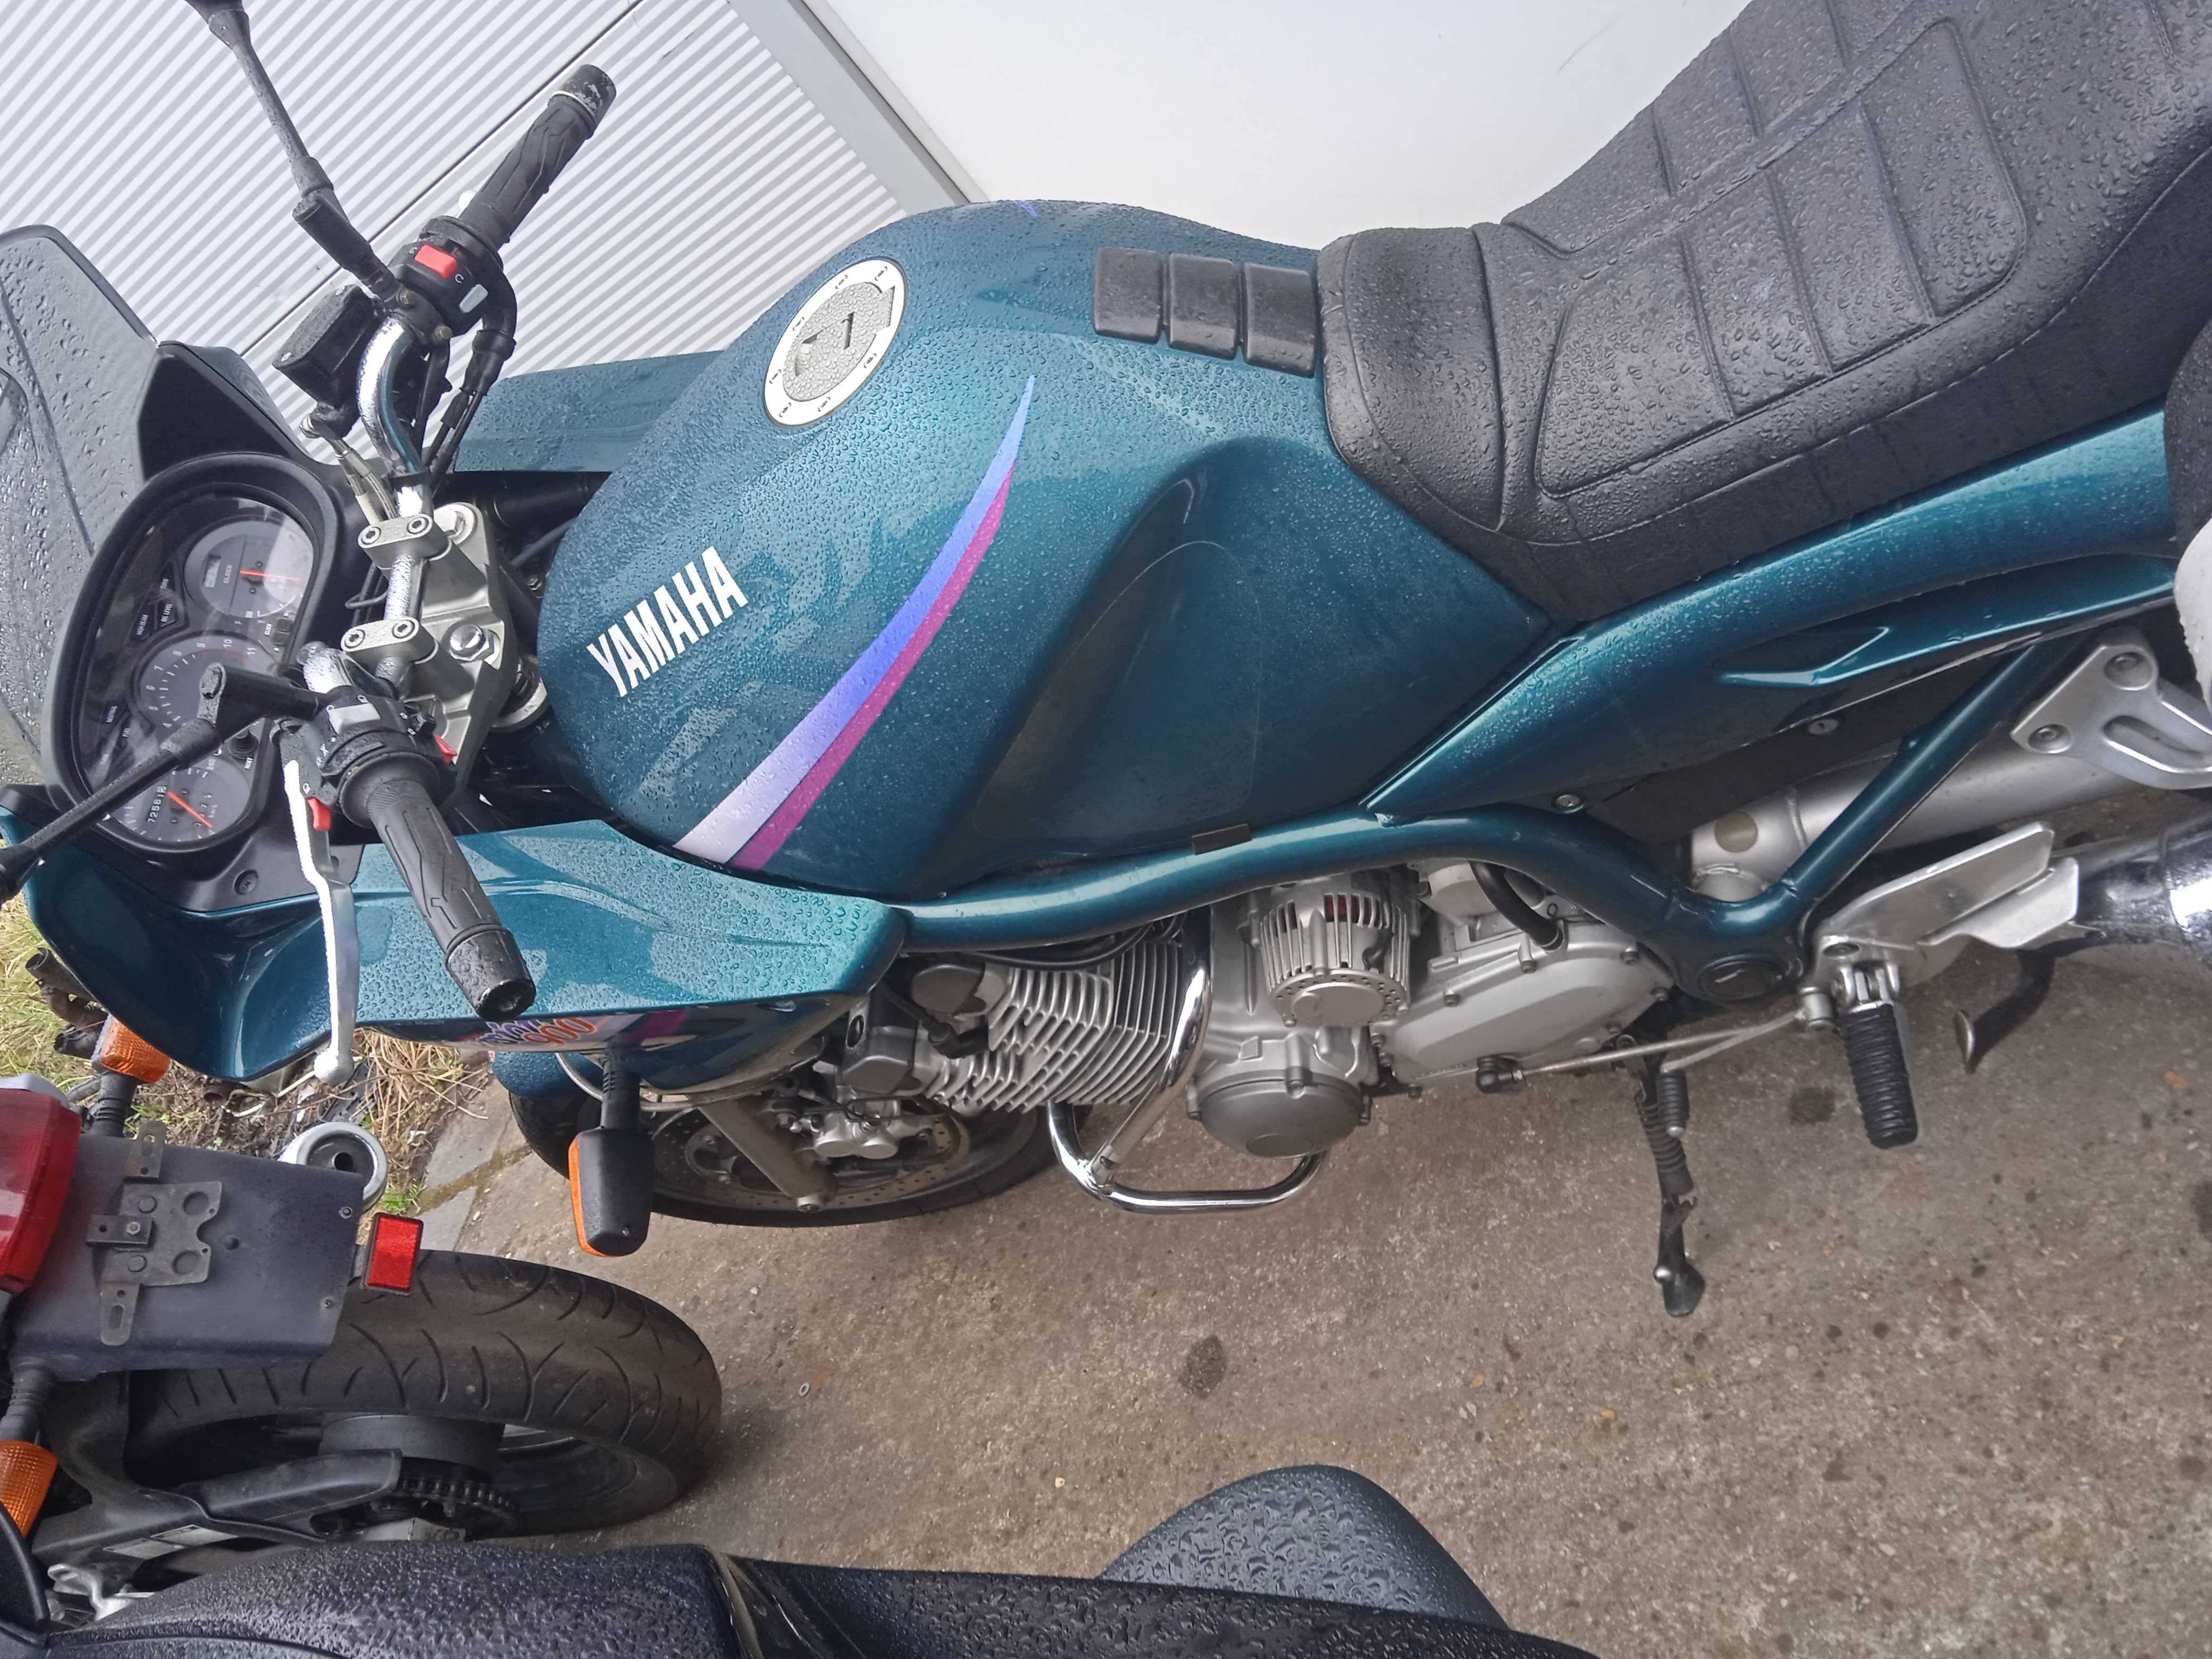 Sprzedam motocykl yamaha xj900s